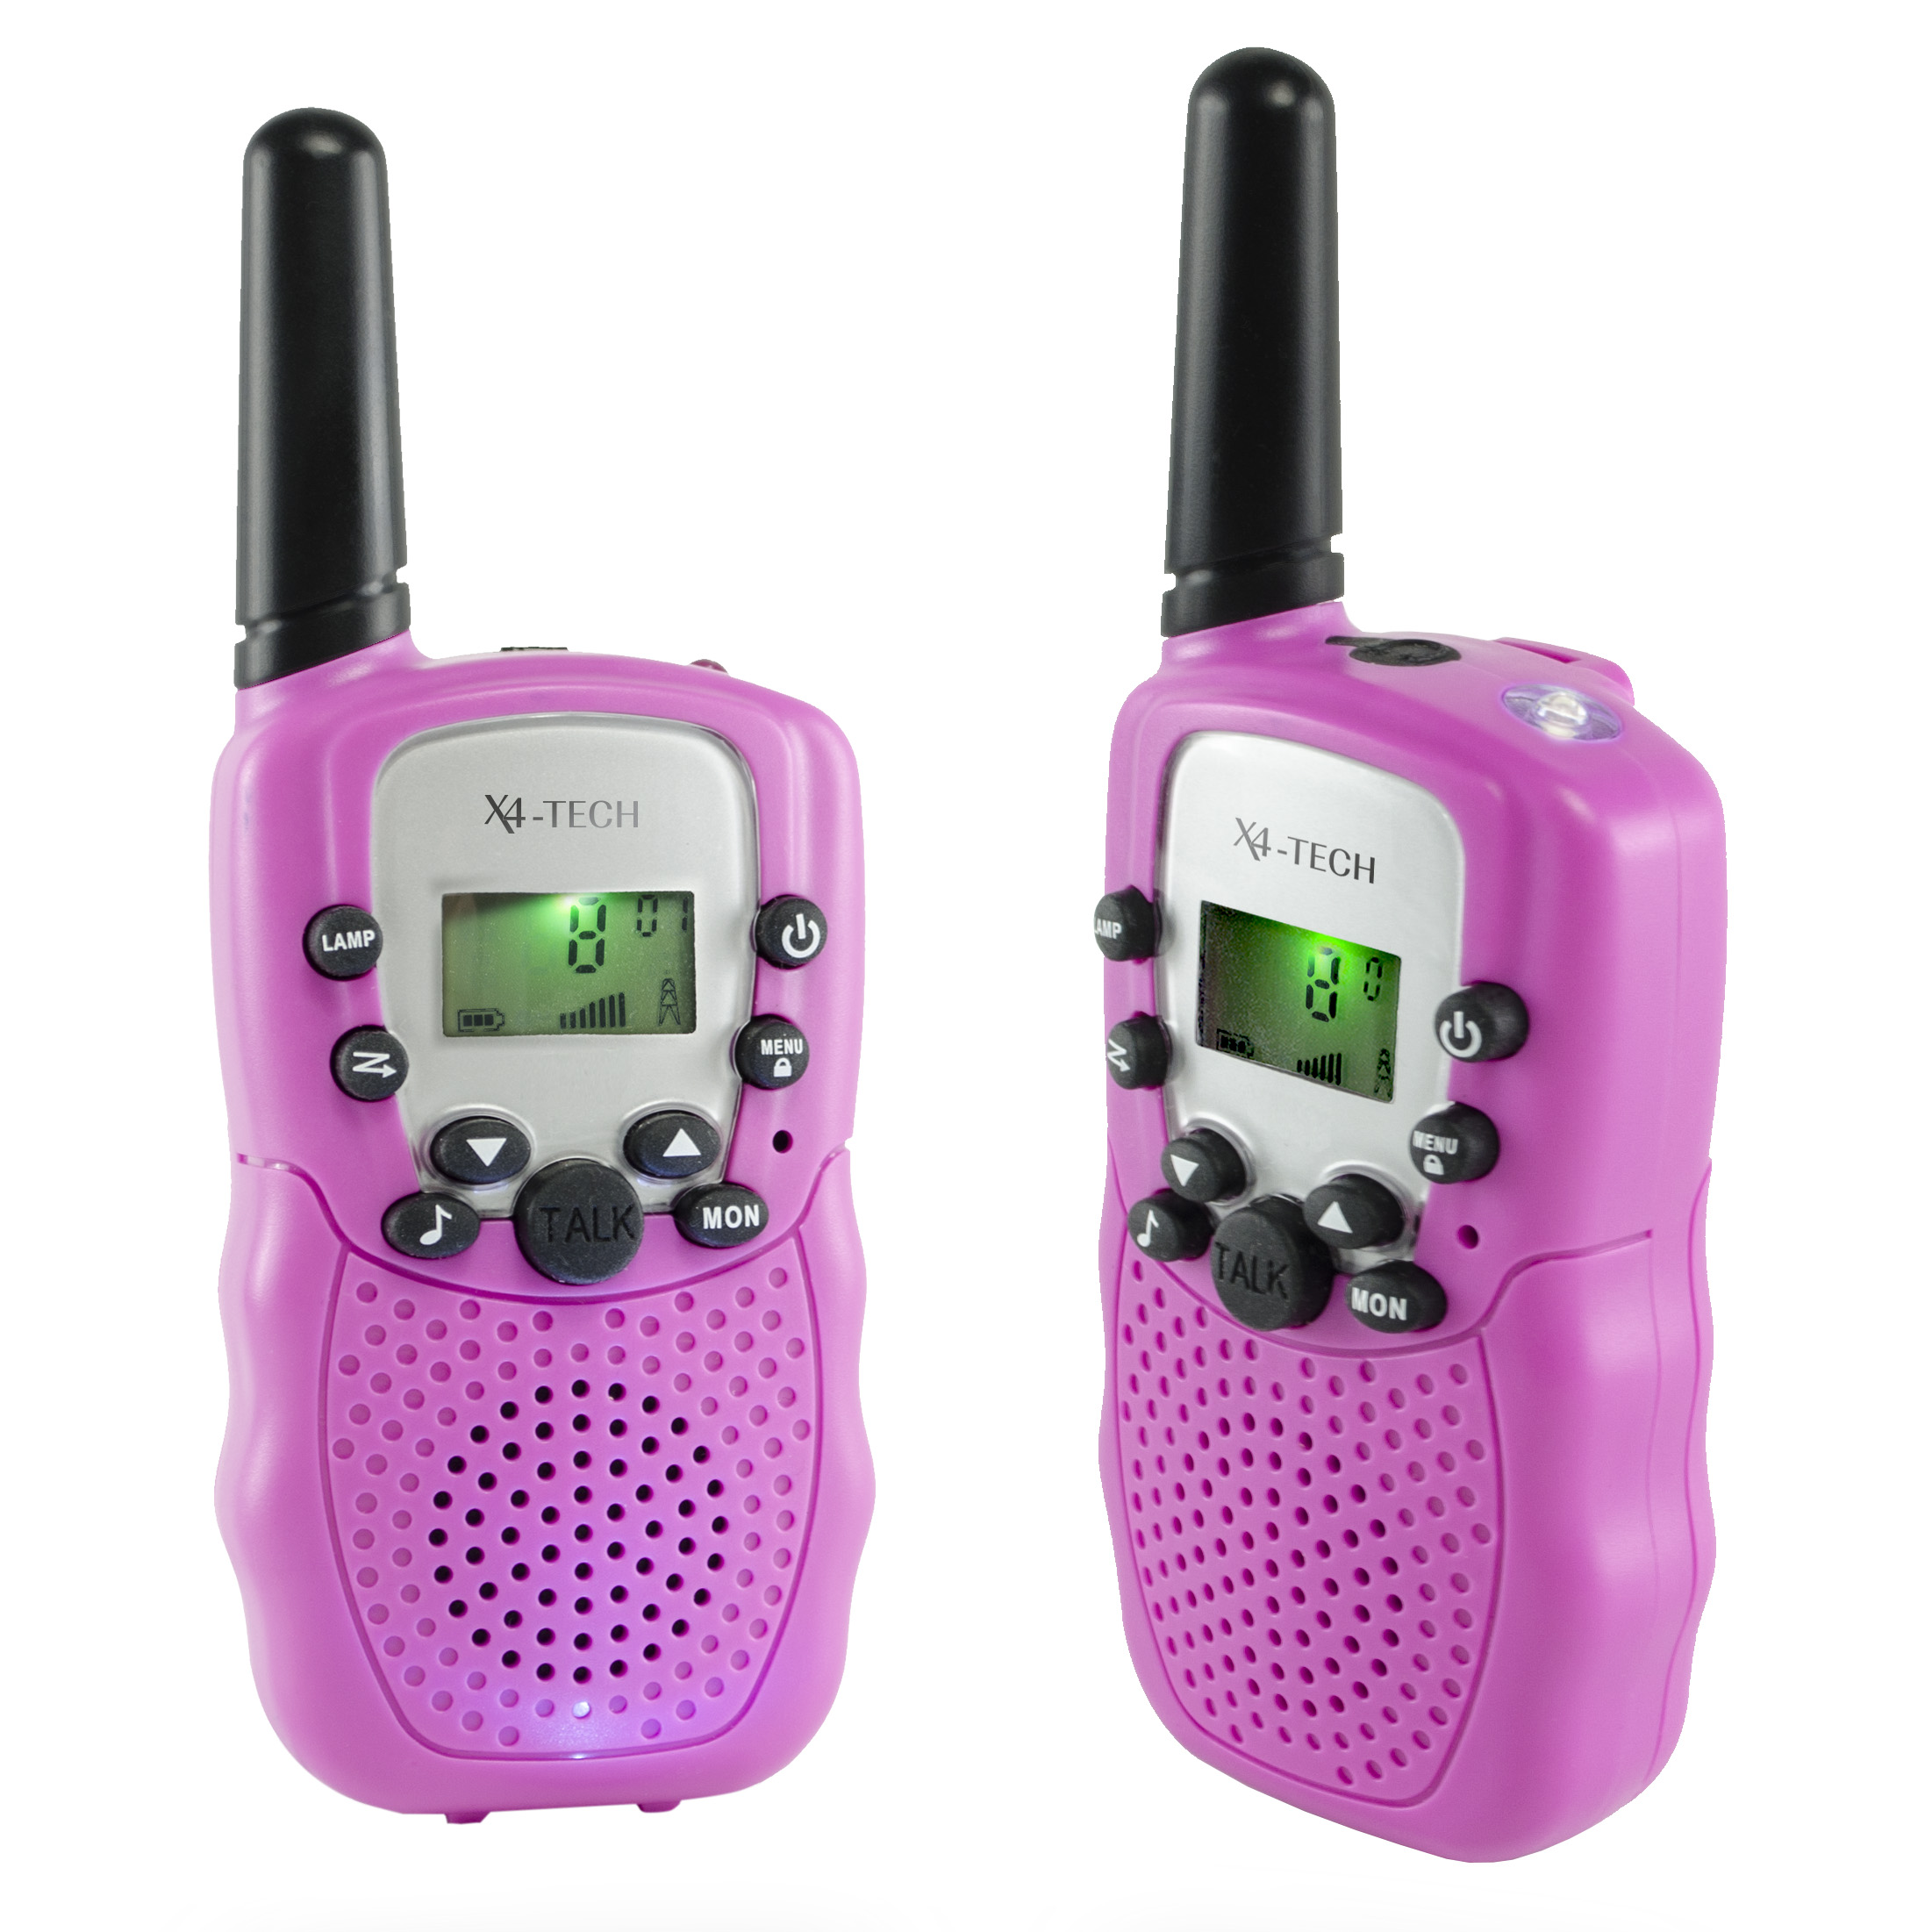 X4-TECH Walkie-Talkie mit 3 km Reichweite, 8 Kanälen, LCD-Display, LED-Licht und Kopfhöreranschluss perfekt für Outdoor-Abenteuer, pink